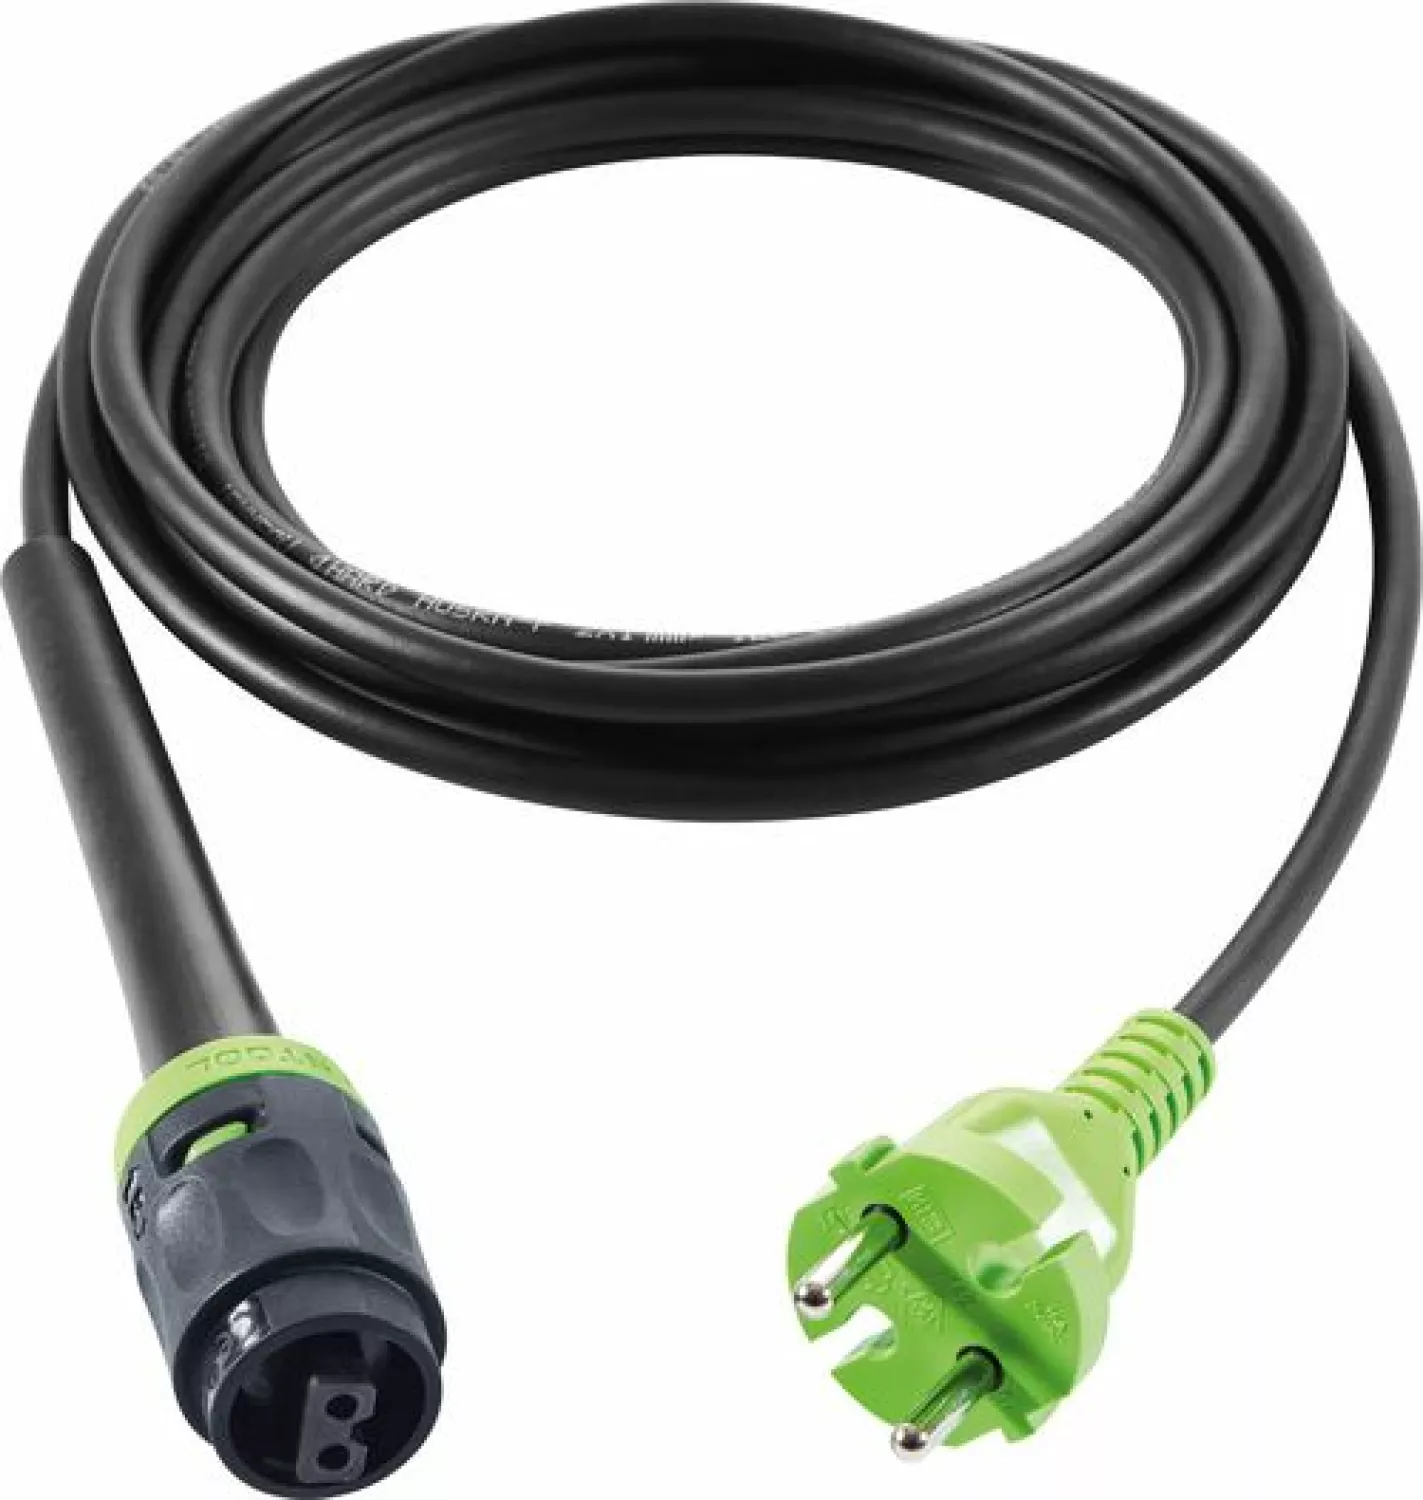 Festool H05 RN-F-4 PLANEX Plug-It kabel - 4m-image